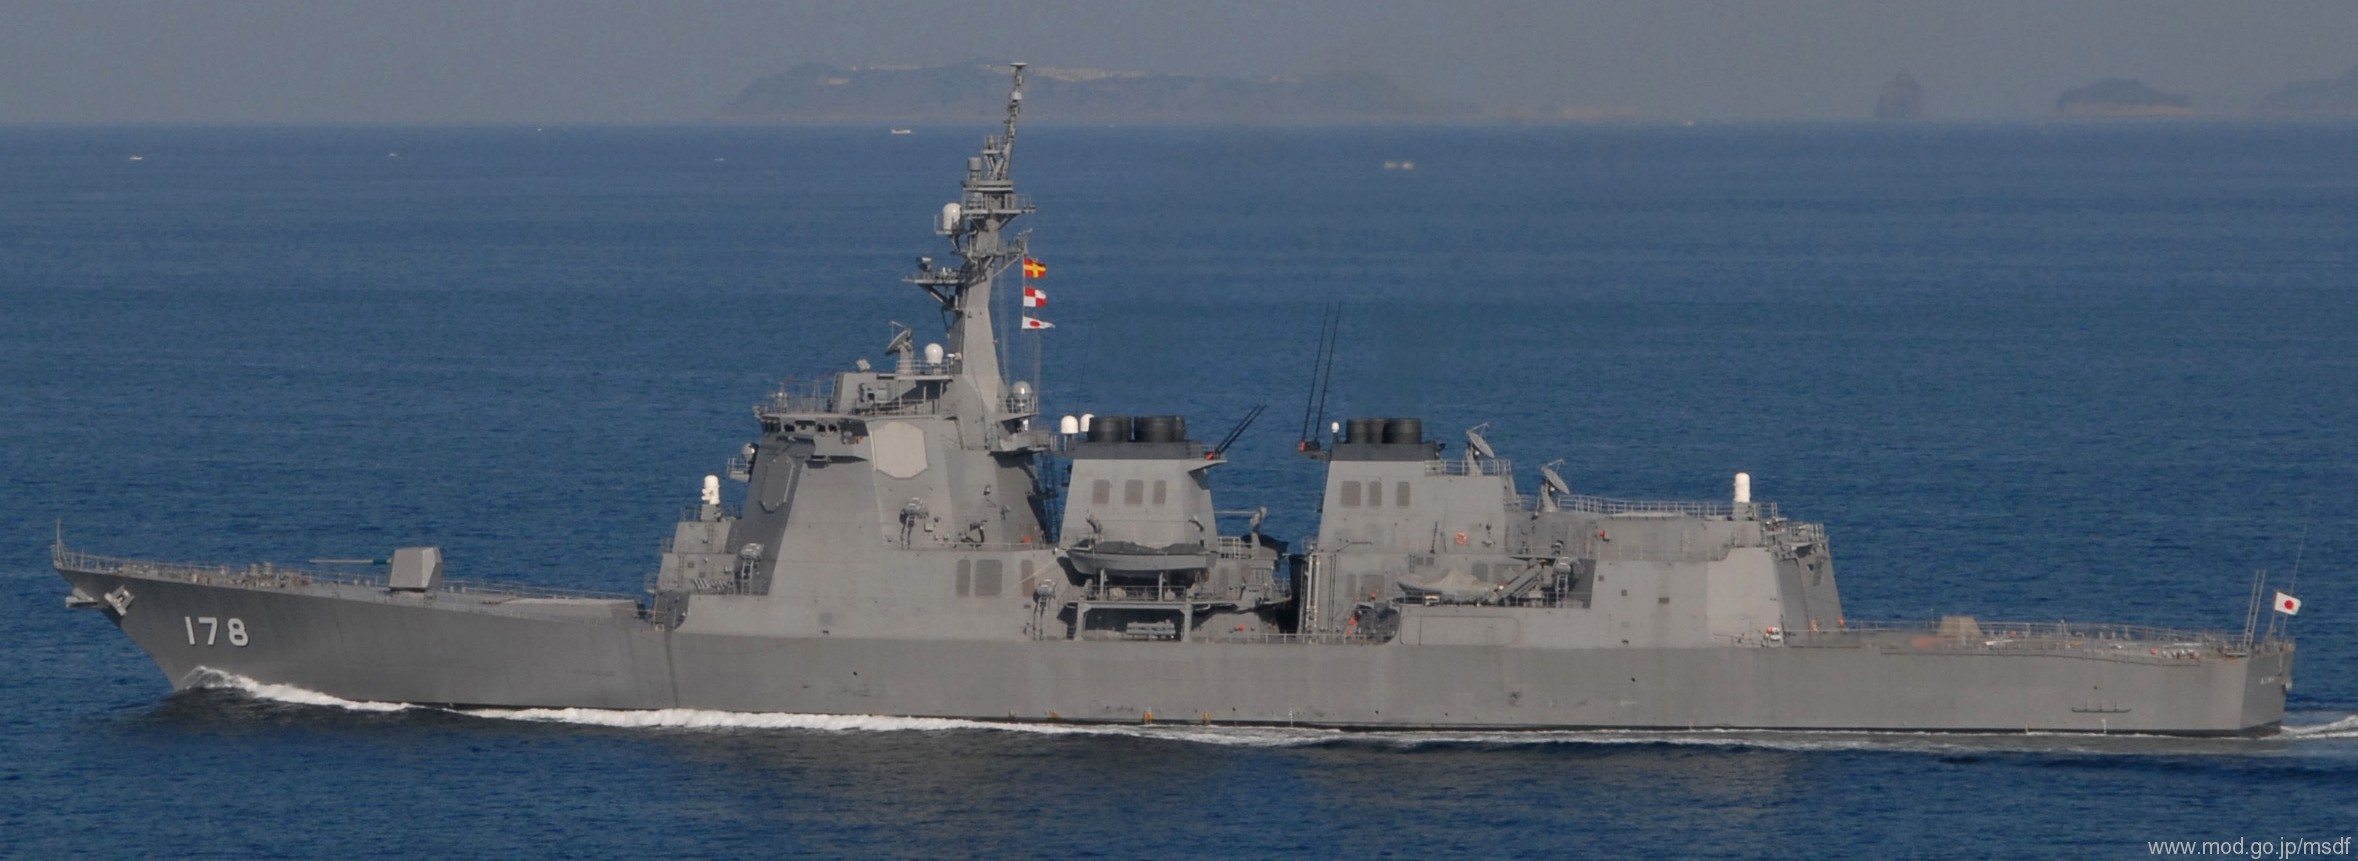 ddg-178 jds ashigara atago class guided missile destroyer japan maritime self defense force jmsdf 04